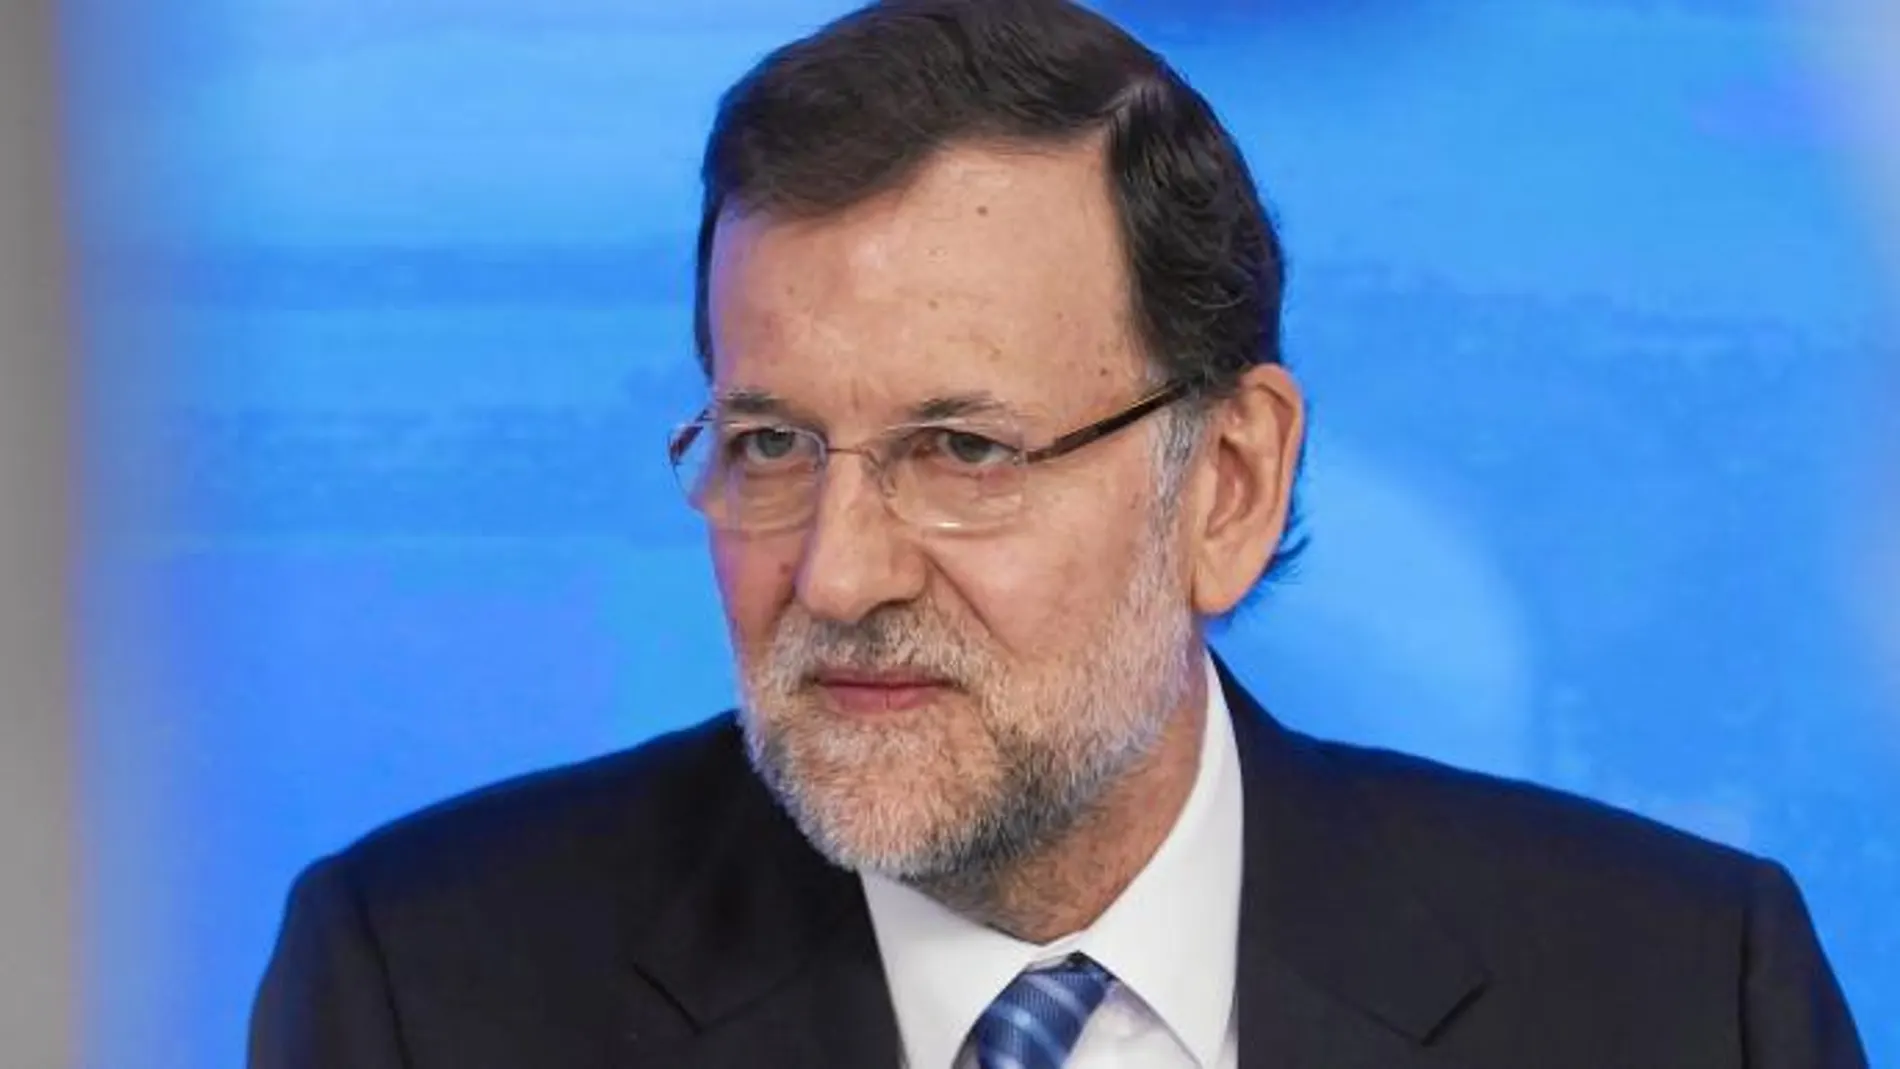 El presidente del Gobierno, Mariano Rajoy, durante un Comité Ejecutivo del Partido Popular